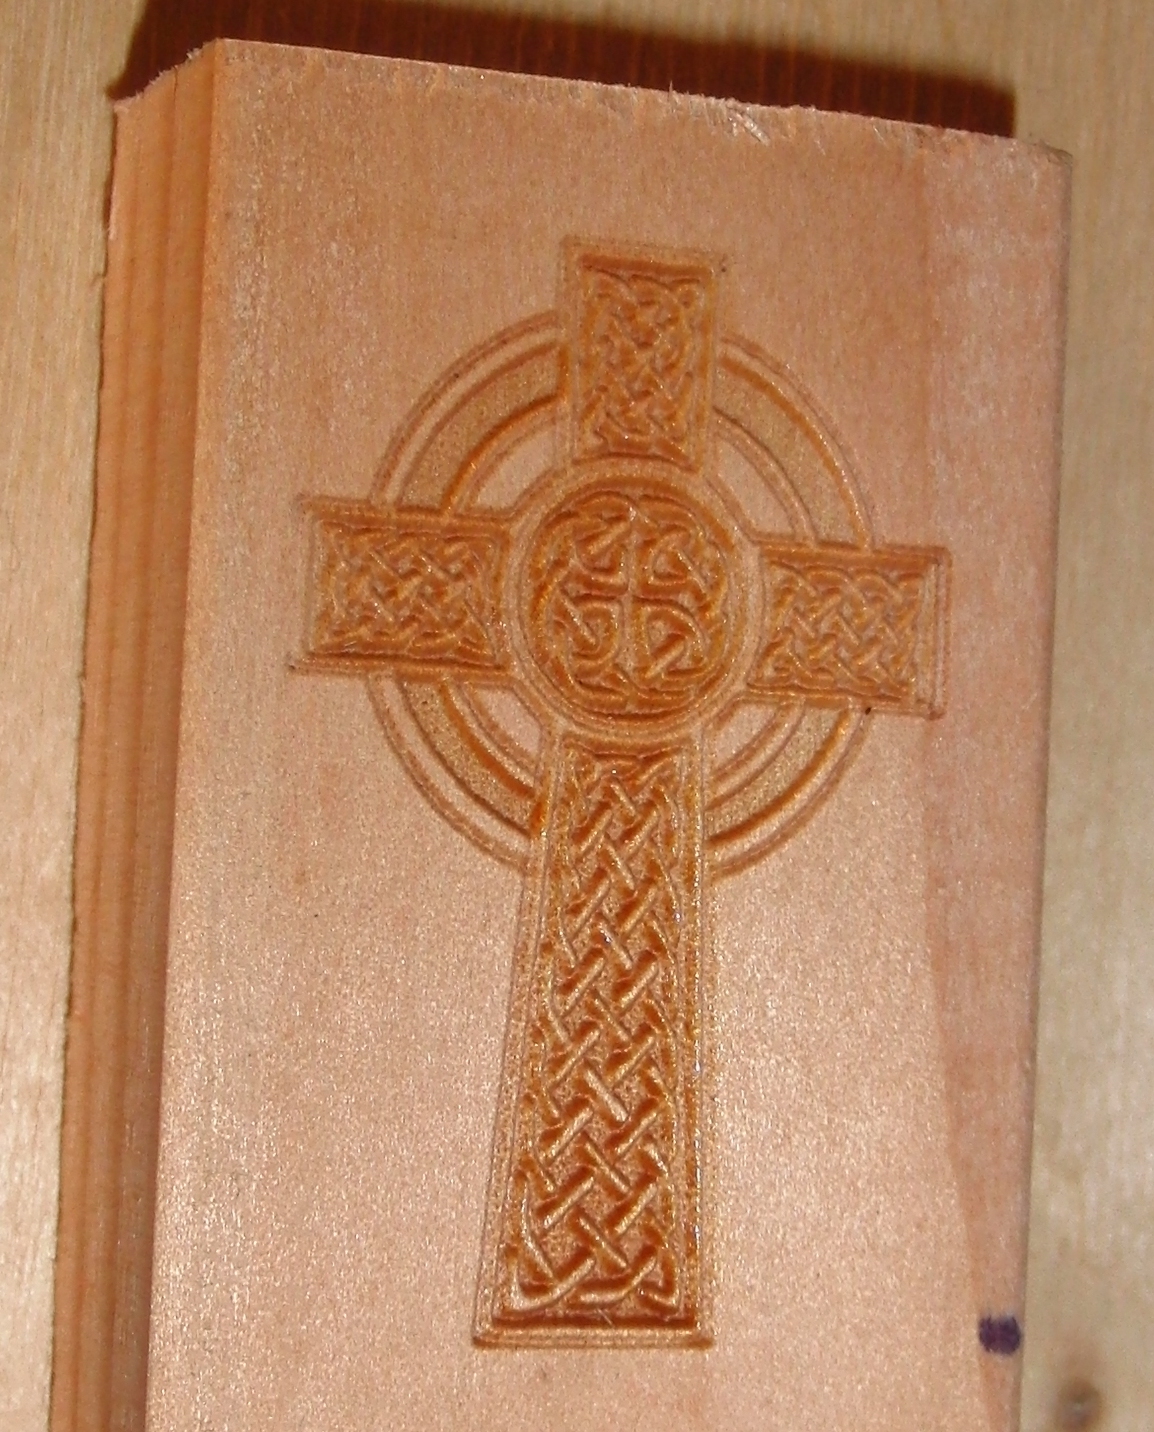 laser Engraved Celtic Cross Image